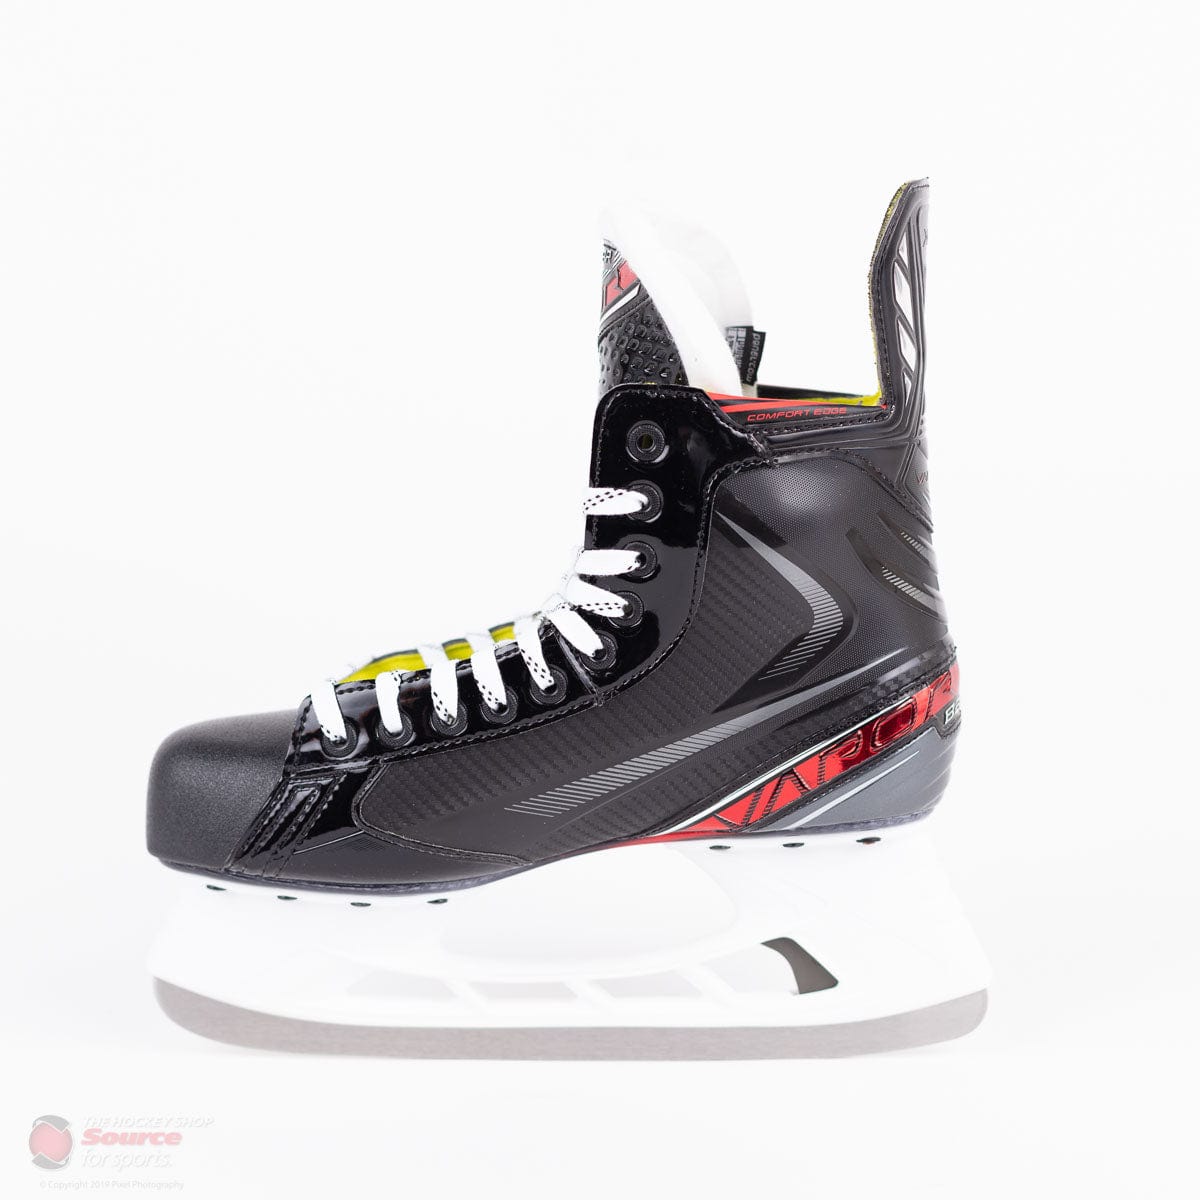 Bauer Vapor X Velocity Senior Hockey Skates (2019)